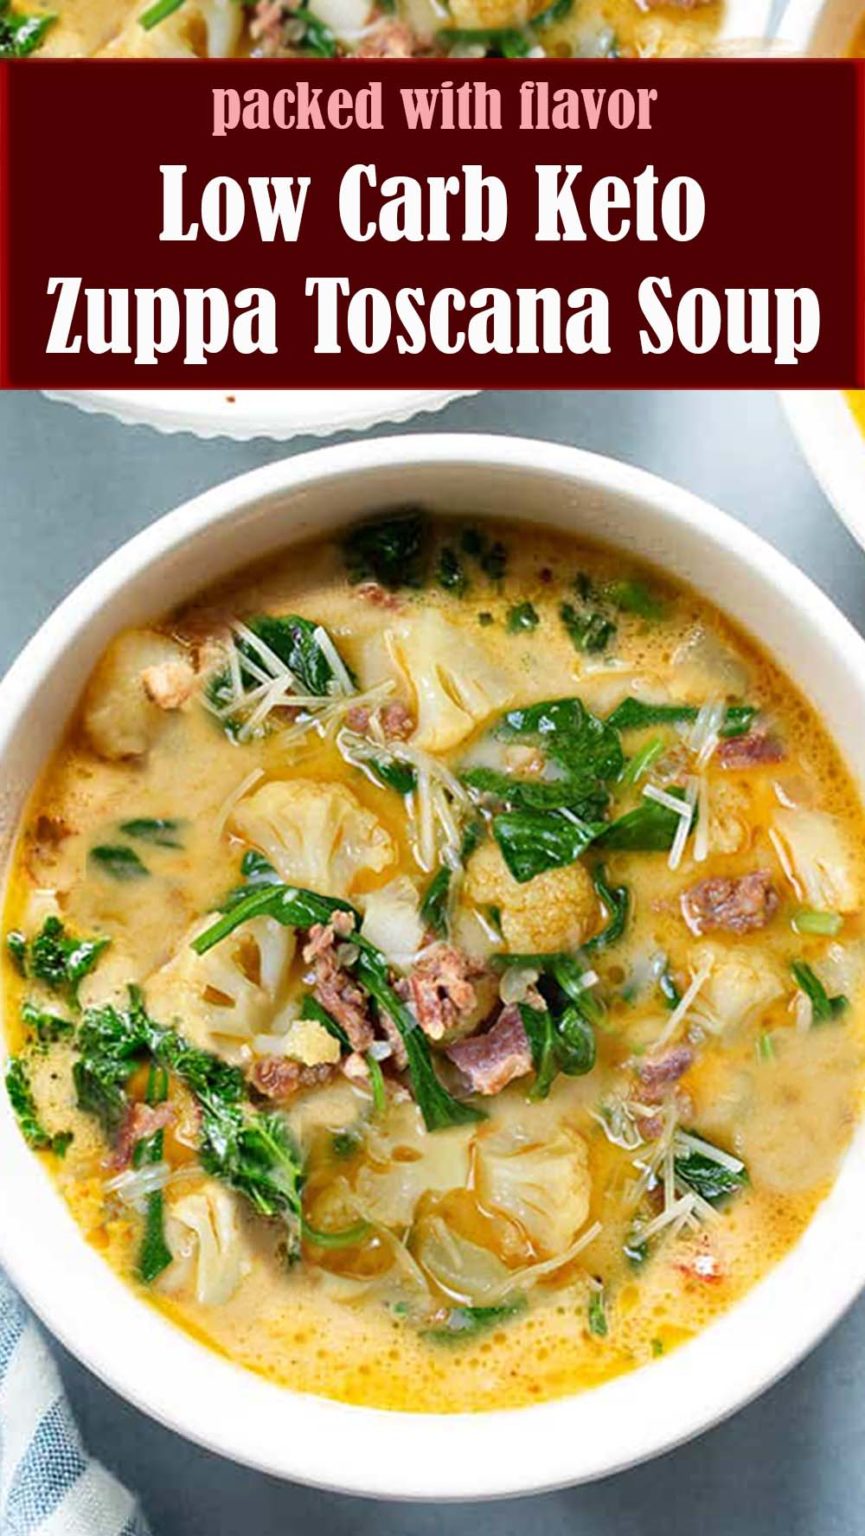 Low Carb Keto Zuppa Toscana Soup Recipe – Reserveamana